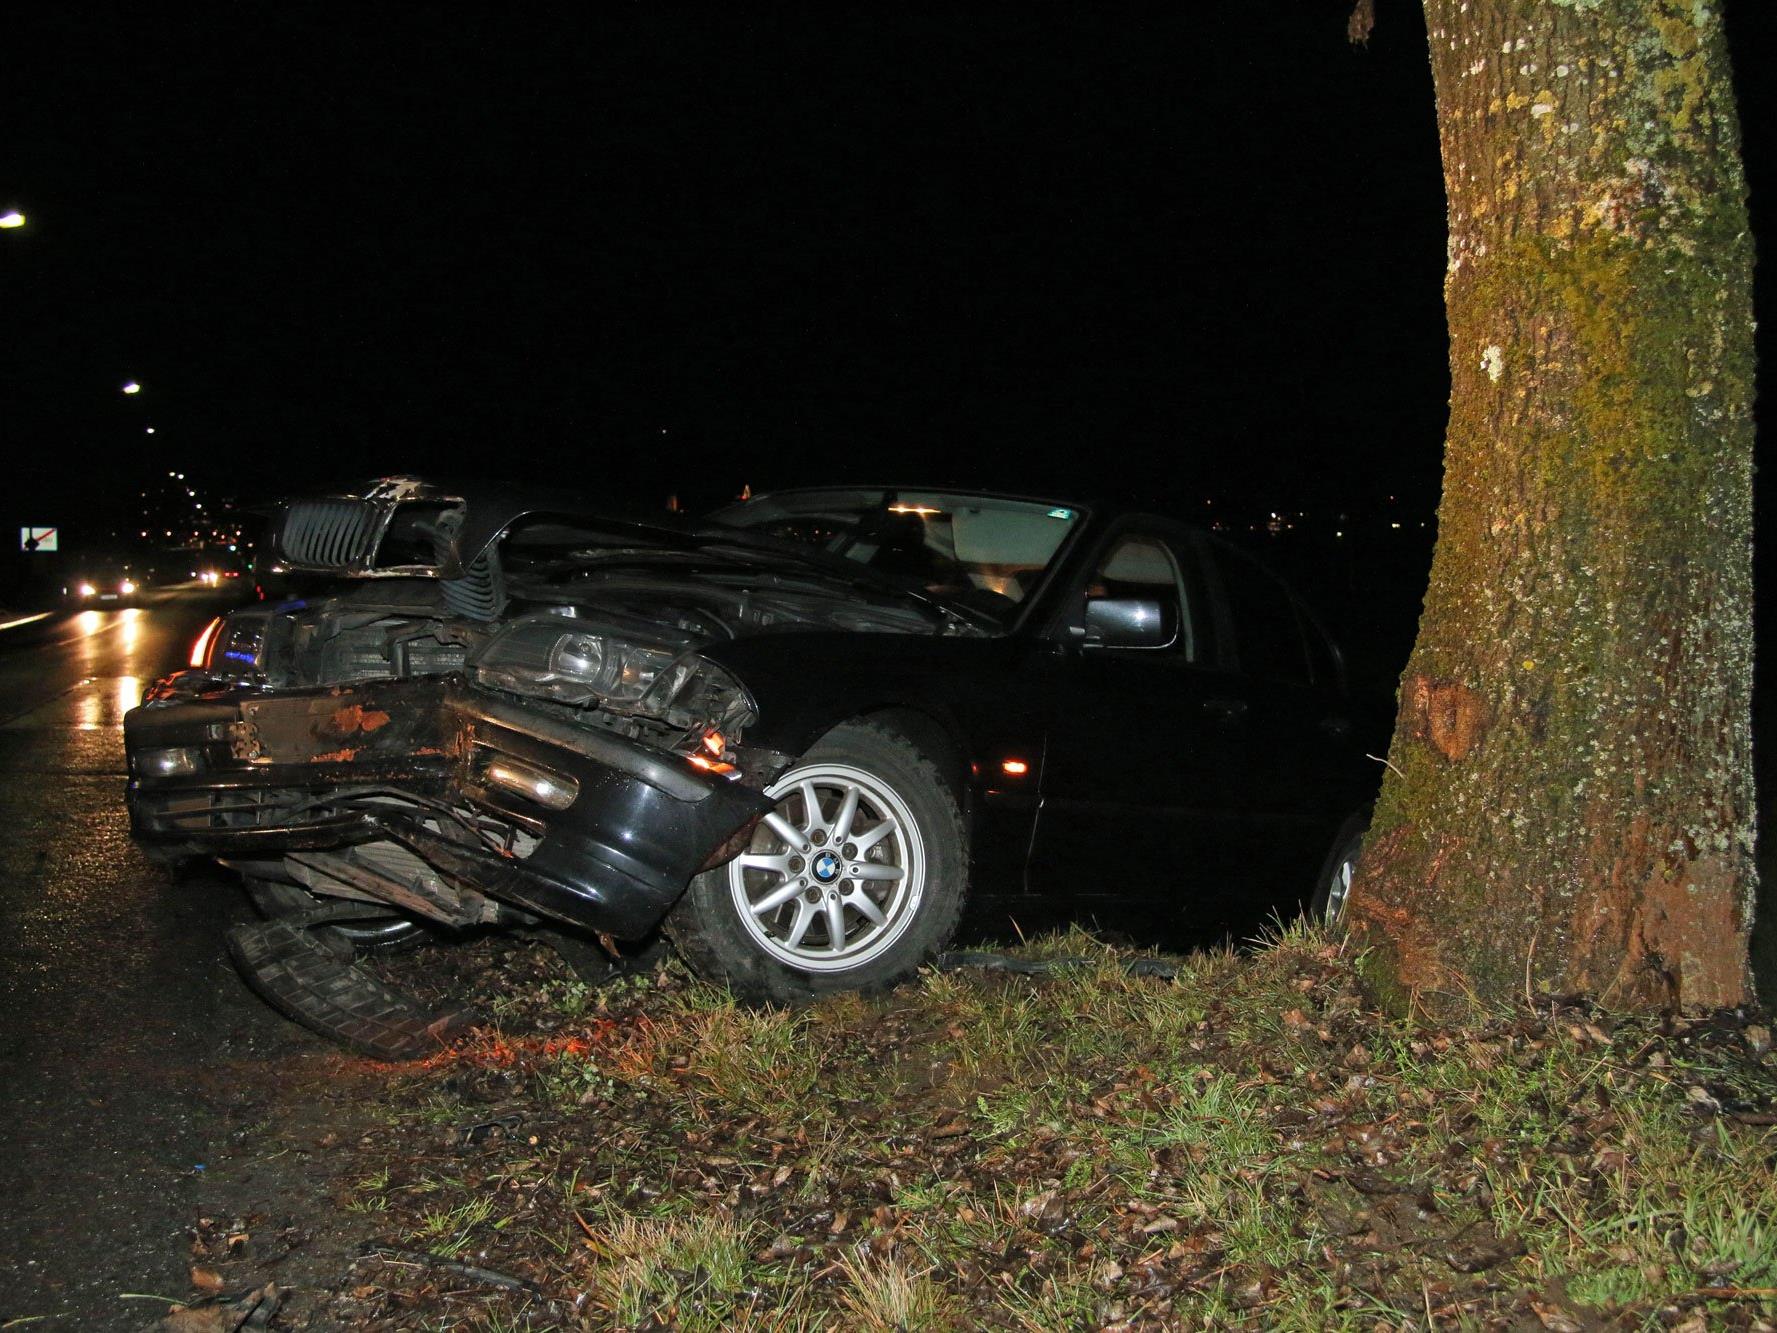 Auto nach Schleuderunfall in Lochau schwer beschädigt - die Insassen blieben unverletzt.